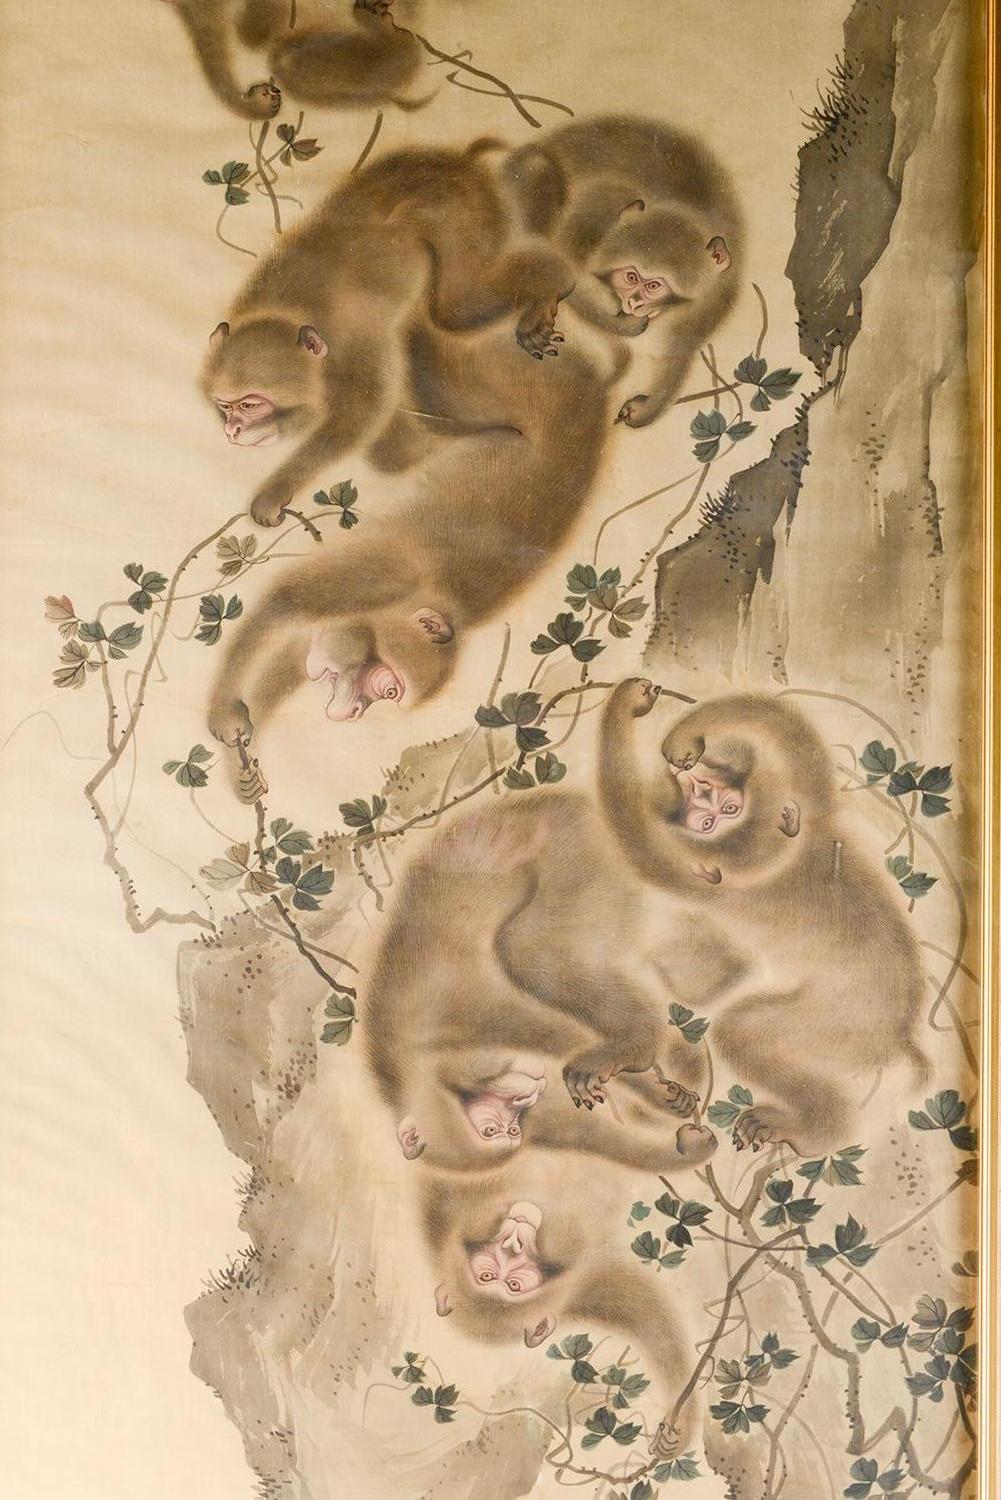 Ein wunderschönes japanisches Aquarell auf Seide aus der Meiji-Periode (1868-1912), das sieben Affen zeigt, die auf einer Felswand klettern und spielen, die von Blättern umrankt ist. In einem elfenbeinfarbenen und vergoldeten Rahmen gefasst. Maße: